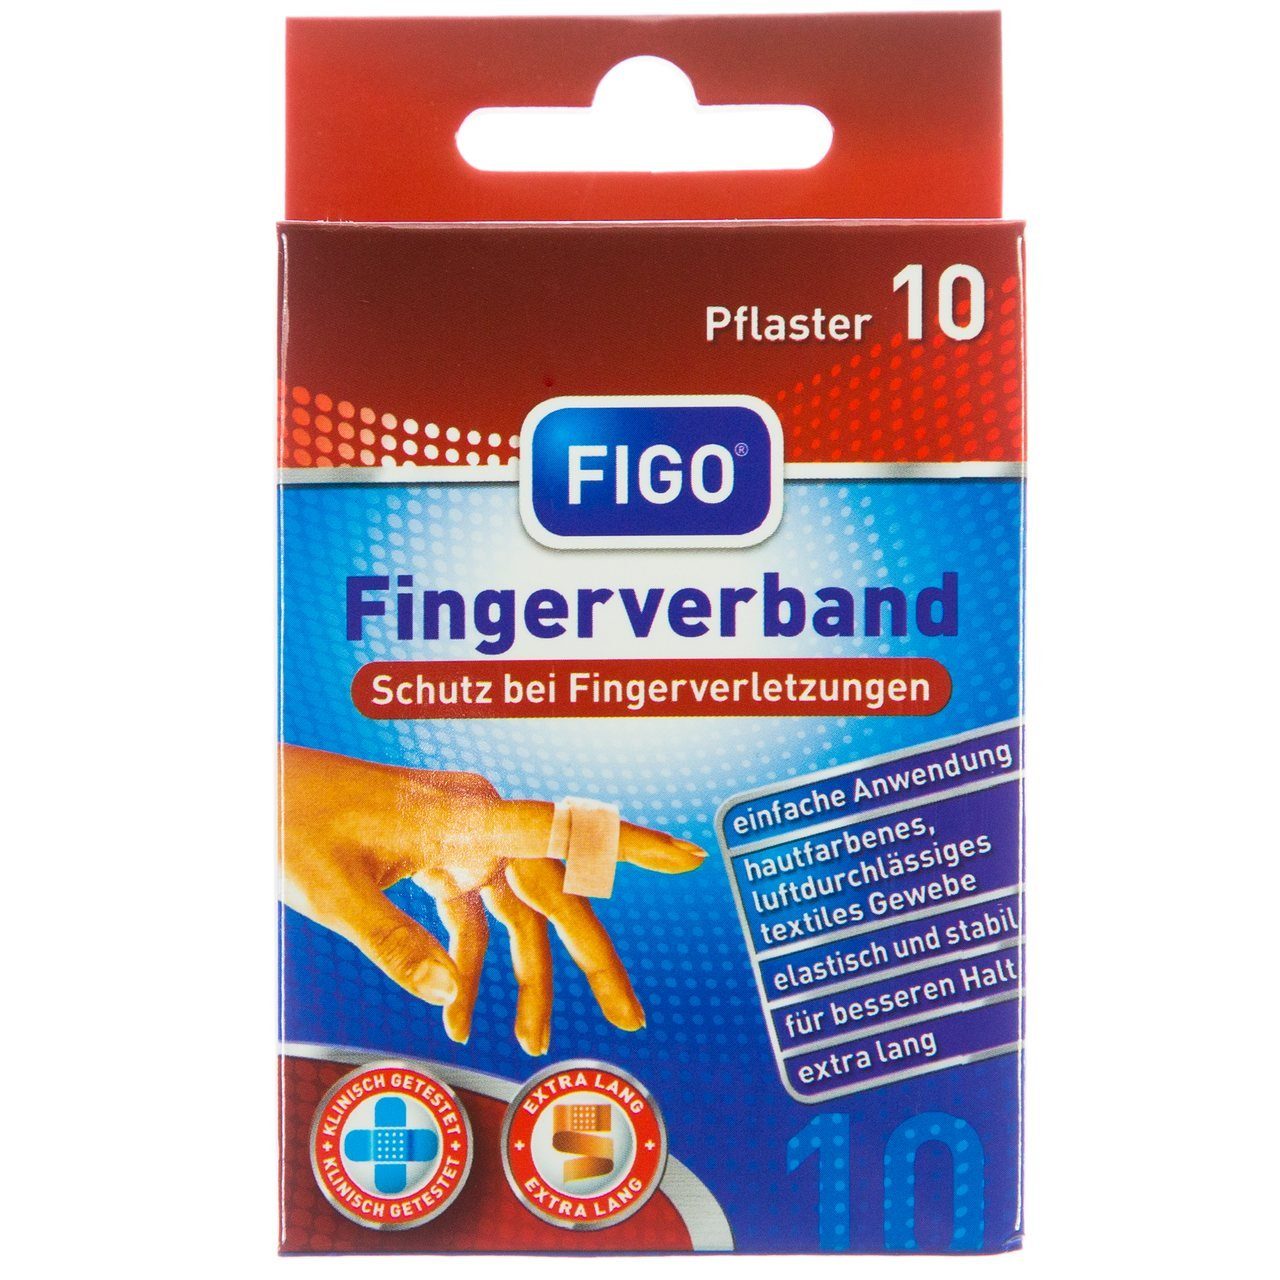 FIGO Wundpflaster Figo Fingerverband 10 er Pflaster Lang 12 cm x 2 cm (Set, 10 St., Pflaster), Universal Pflaster Heftpflaster Fingerpflaster Pflasterverband